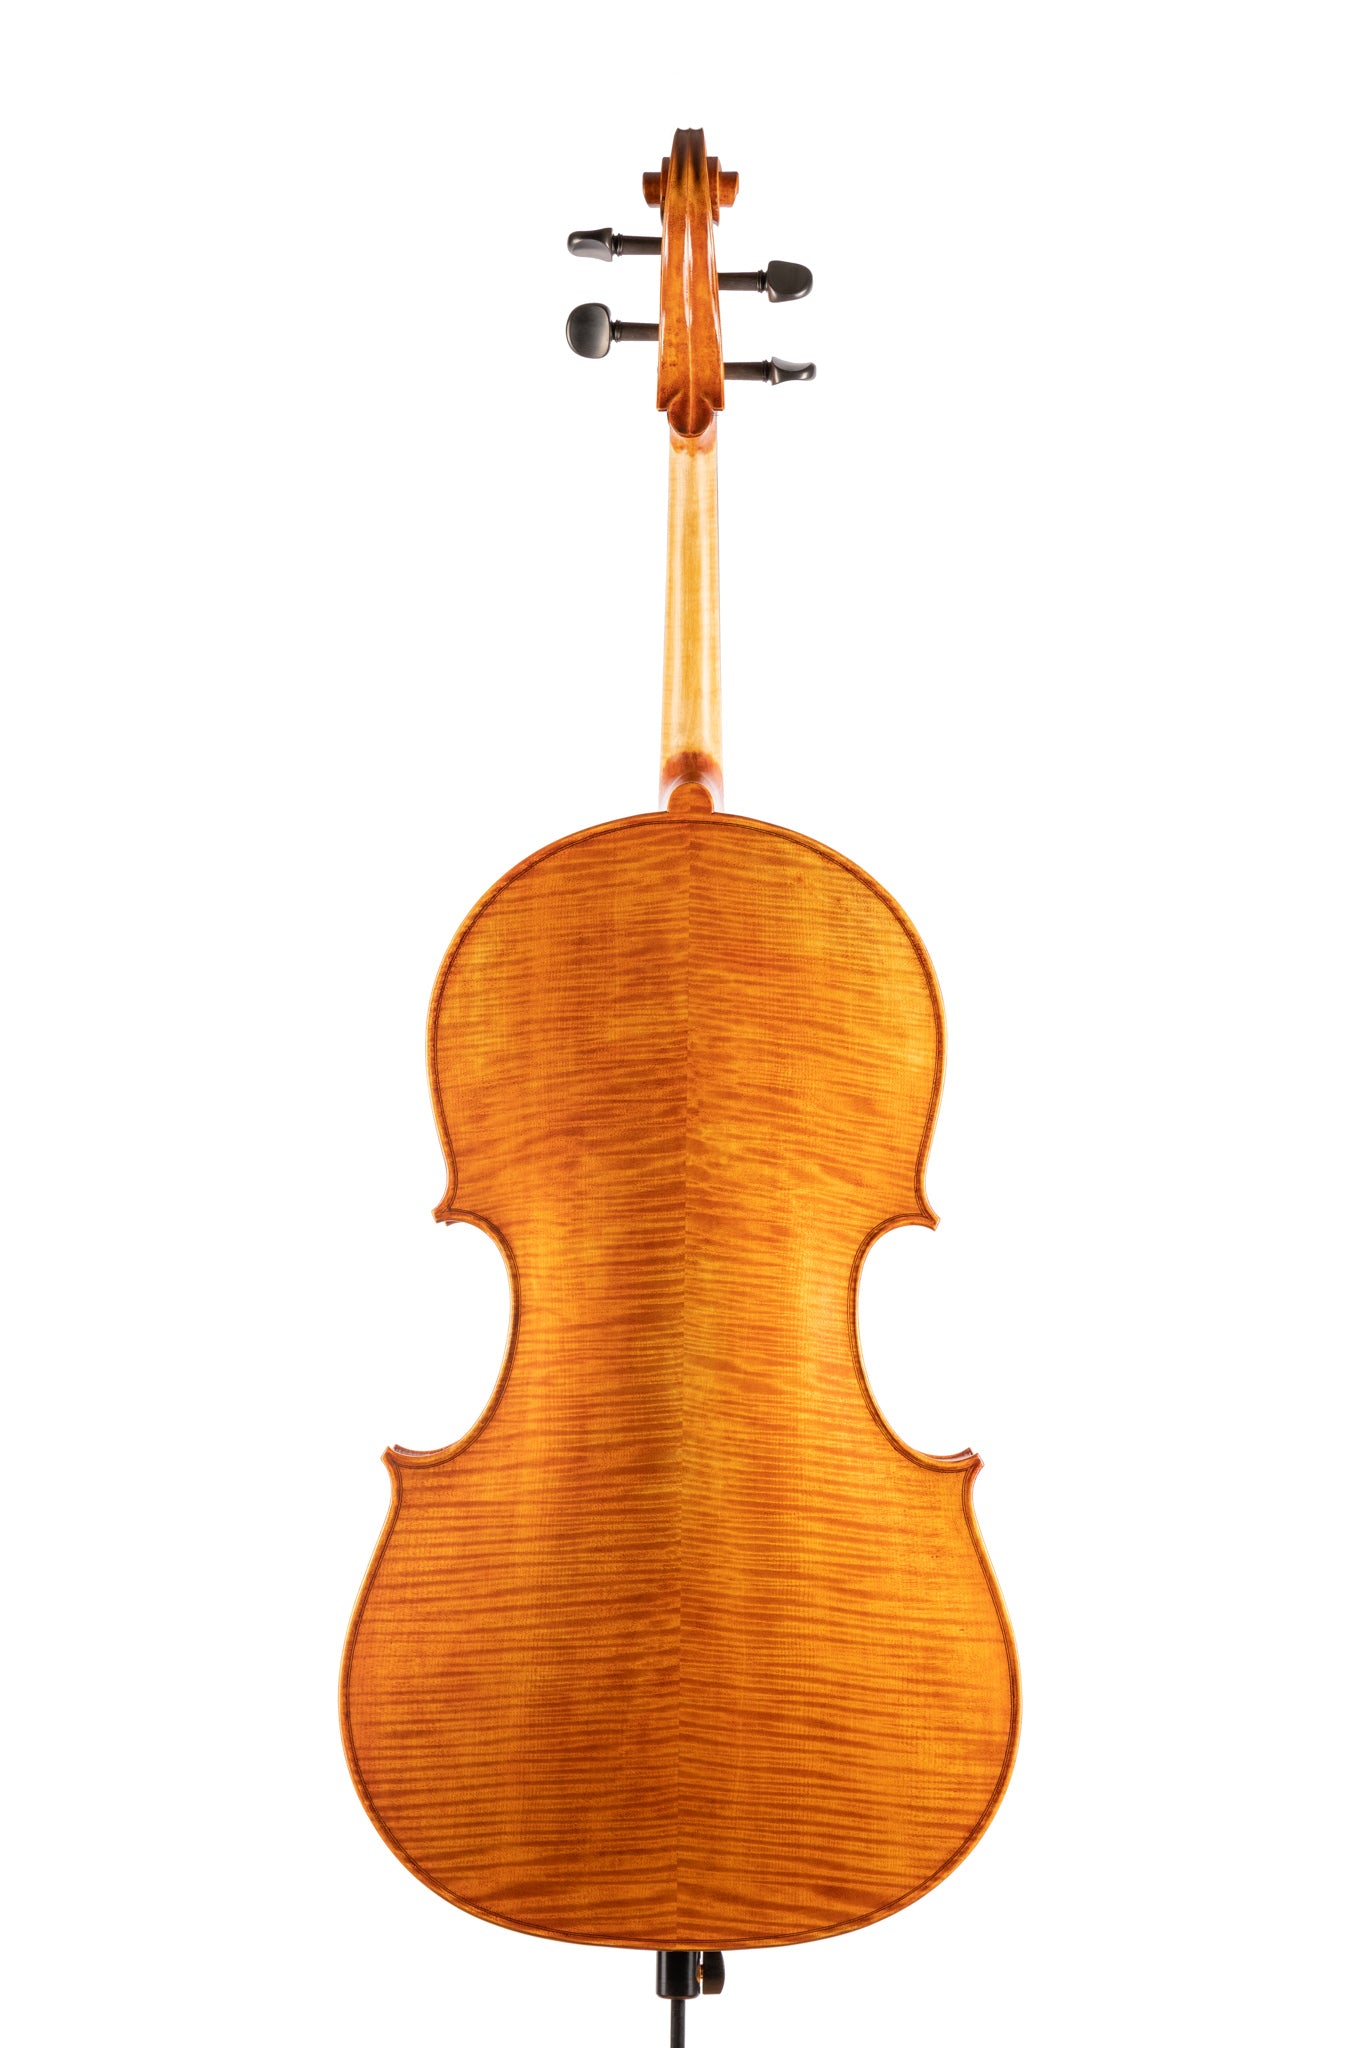 BL-500 Cello